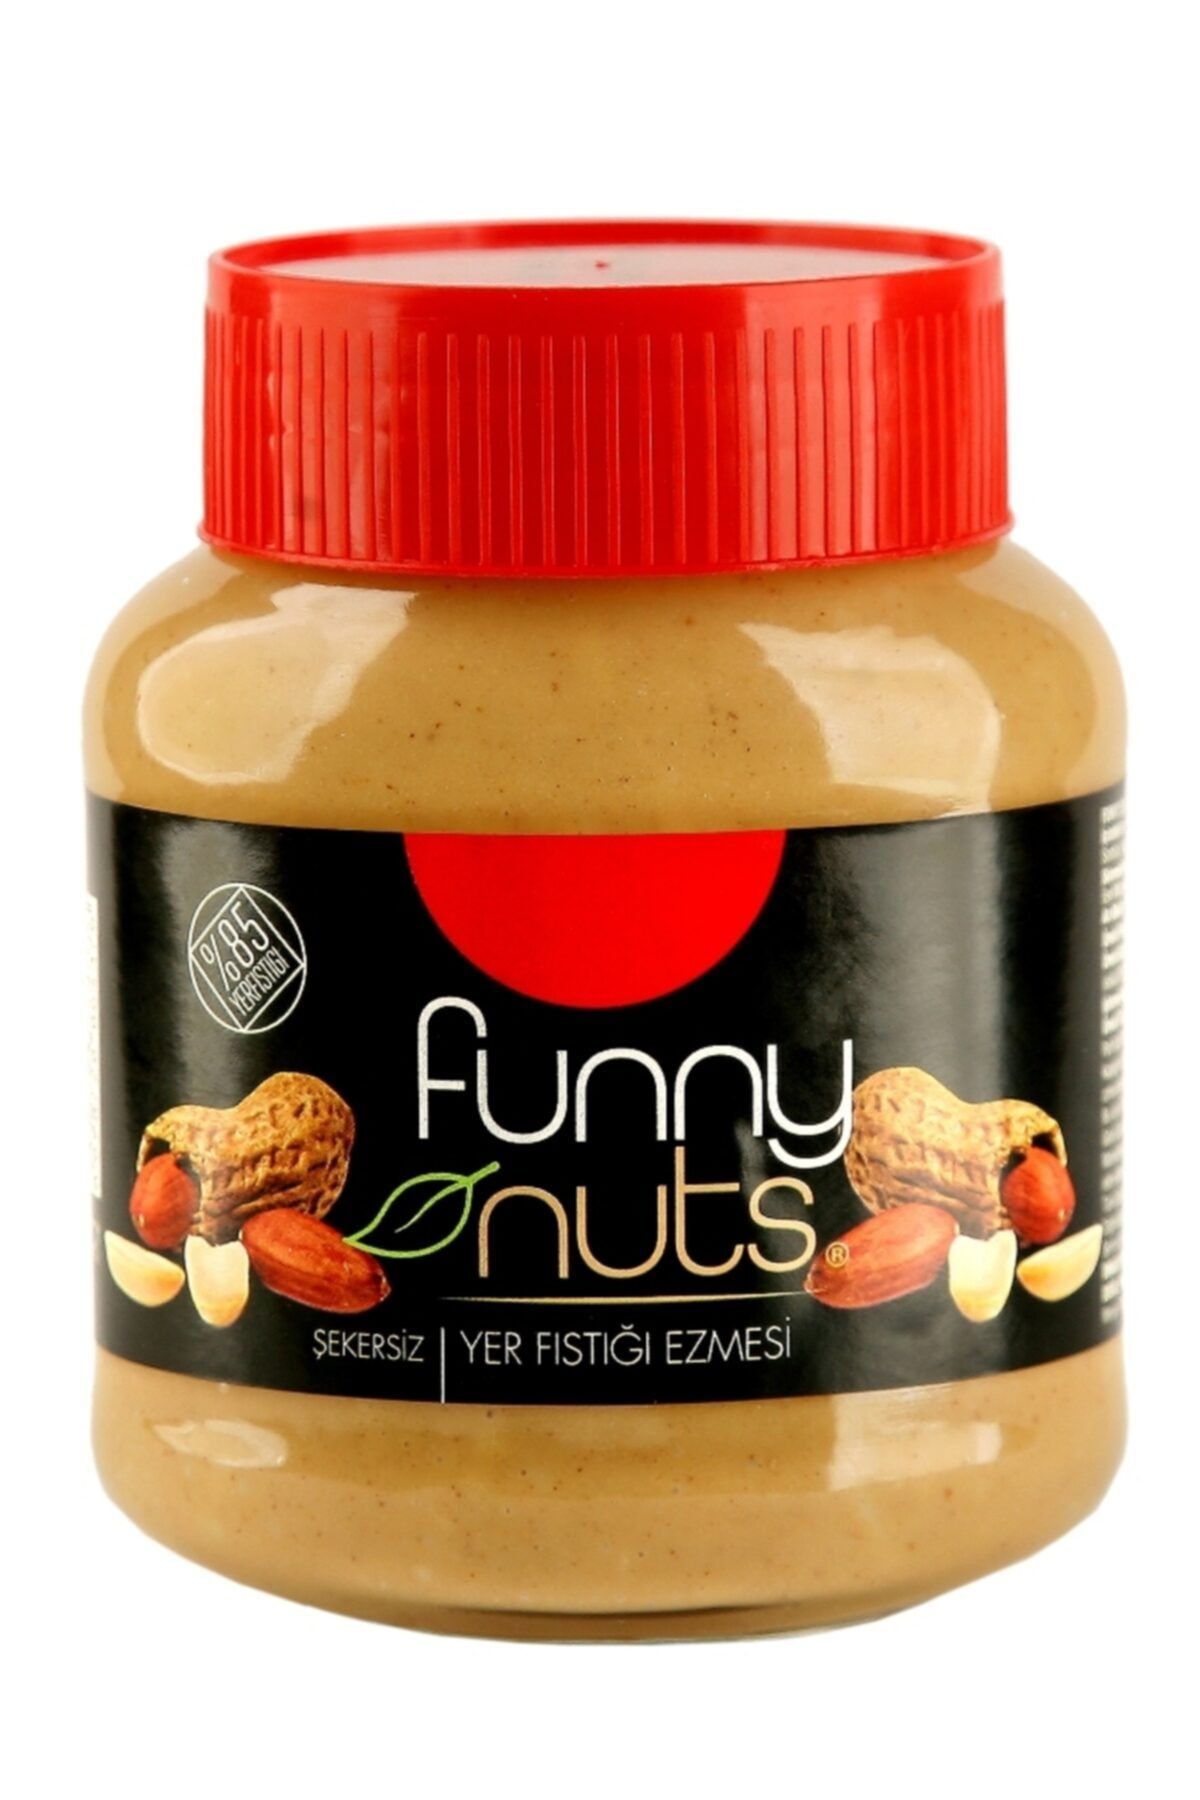 FunnyNuts Funny Nuts Yer Fıstık Ezmesi 320 Gr Cam Şişede Yer Fıstığı Ezmesi